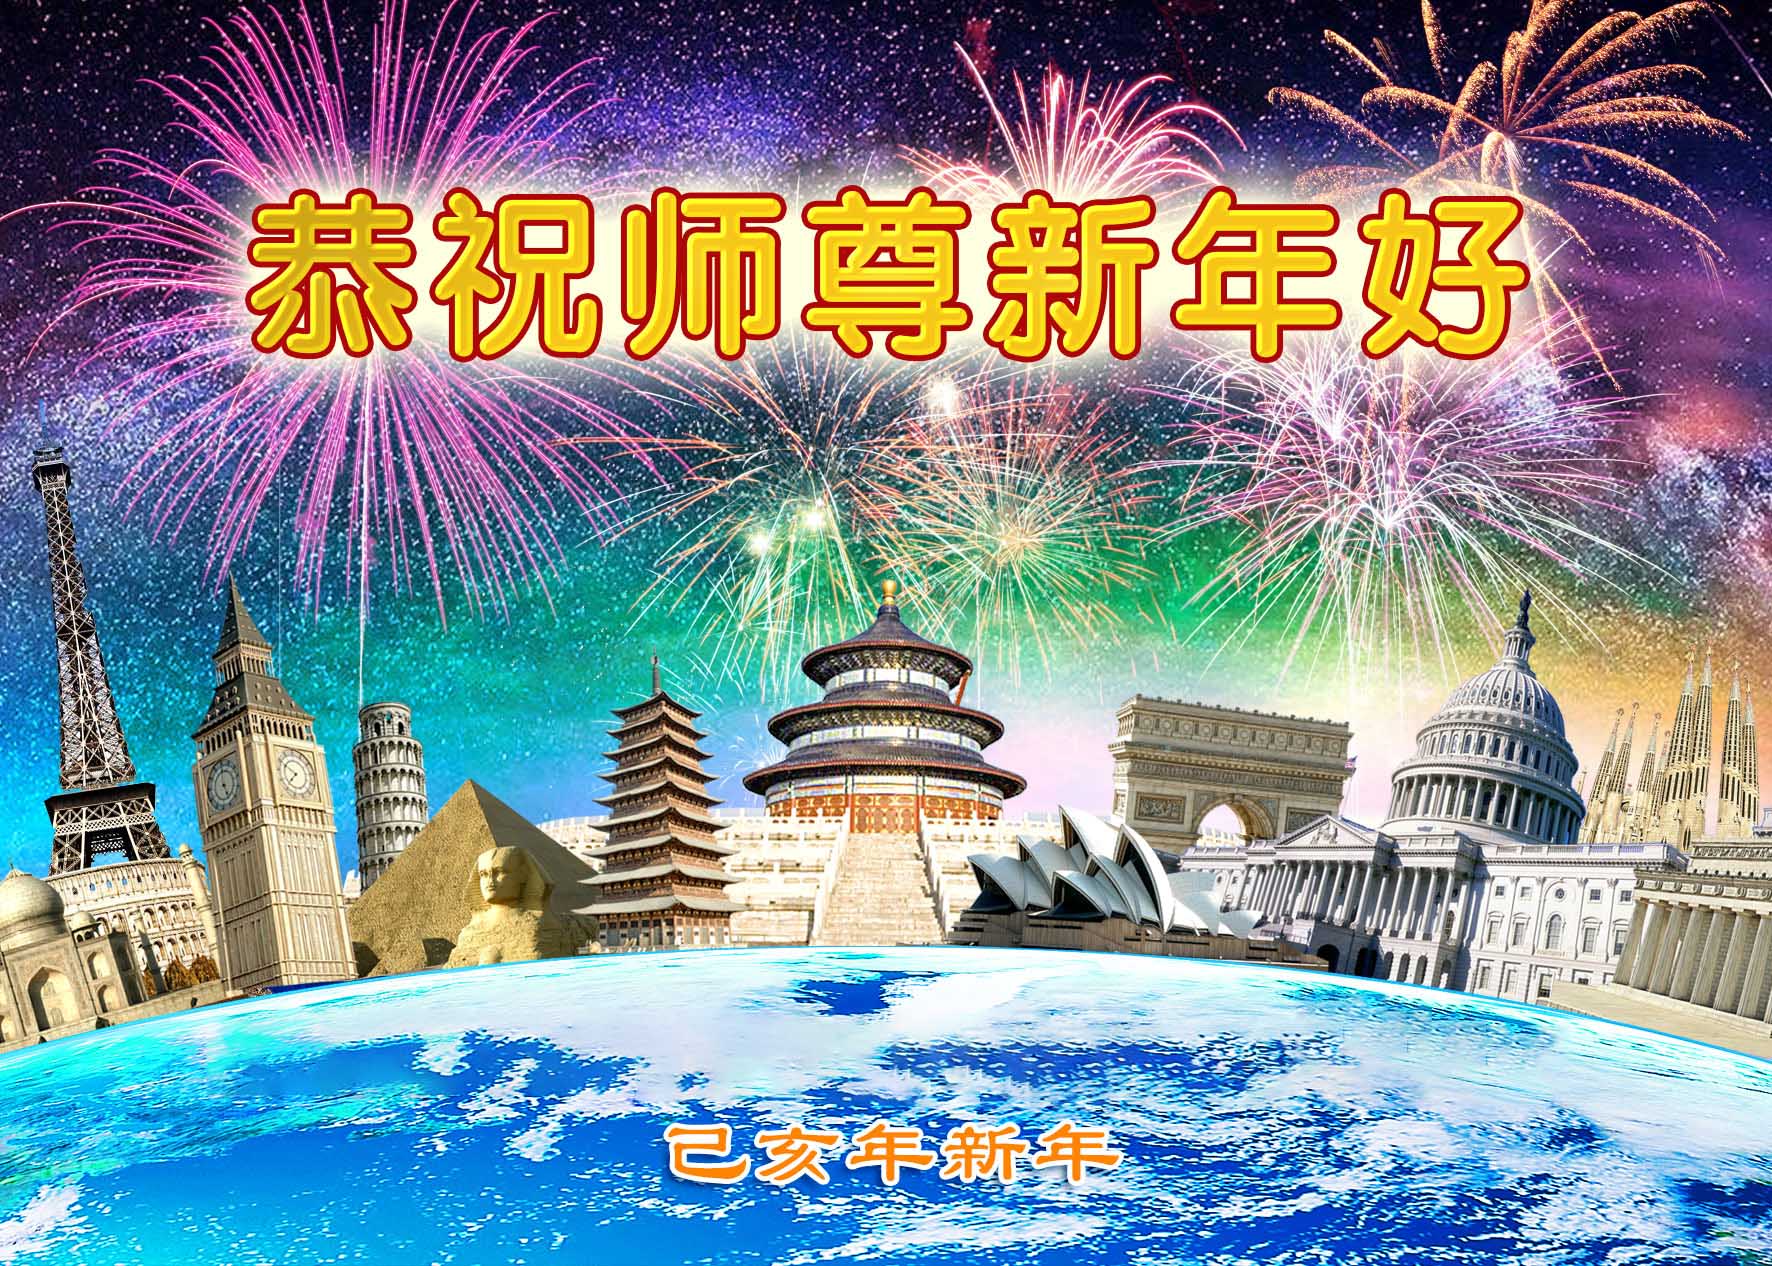 Image for article Expression de la gratitude des disciples de Dafa et des habitants, en Chine et en dehors de la Chine, à l'occasion du Nouvel An chinois